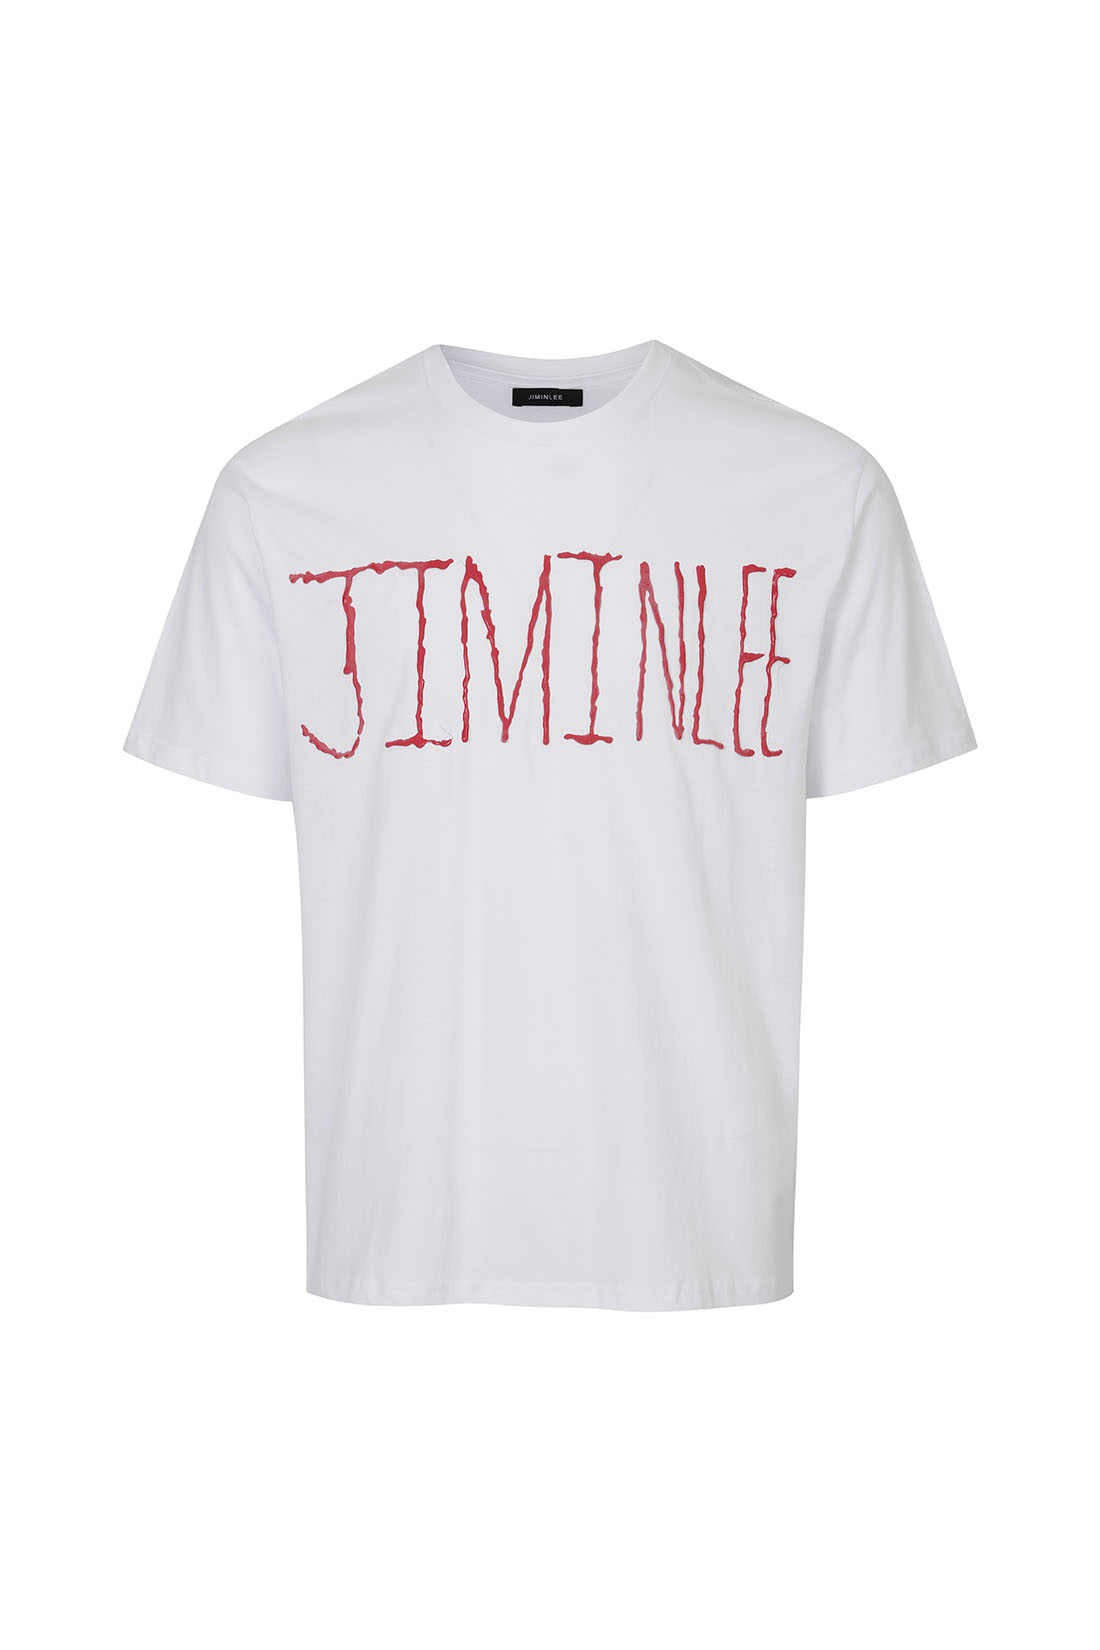 [리뉴얼 재입고] SIGNATURE LOGO DRAWING T-SHIRT 시그니처 로고 드로잉 티셔츠 화이트